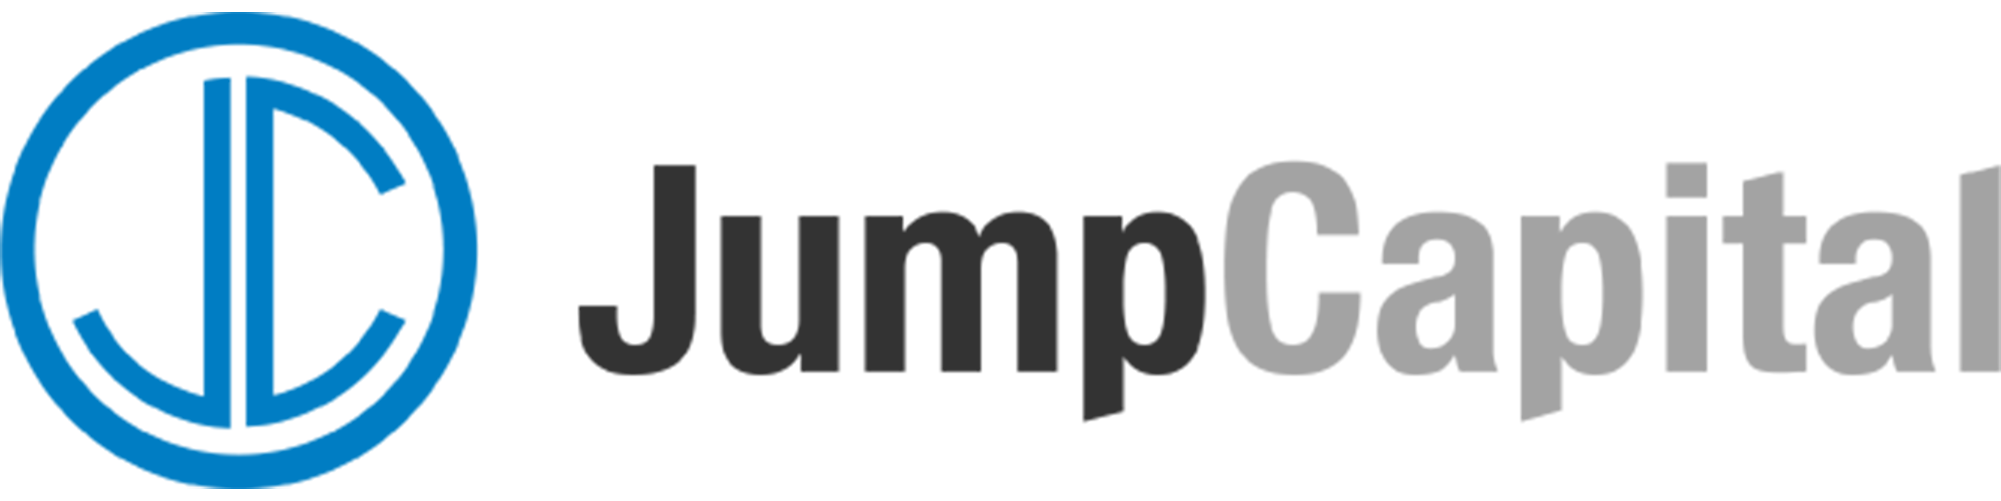 jump capital logo3x